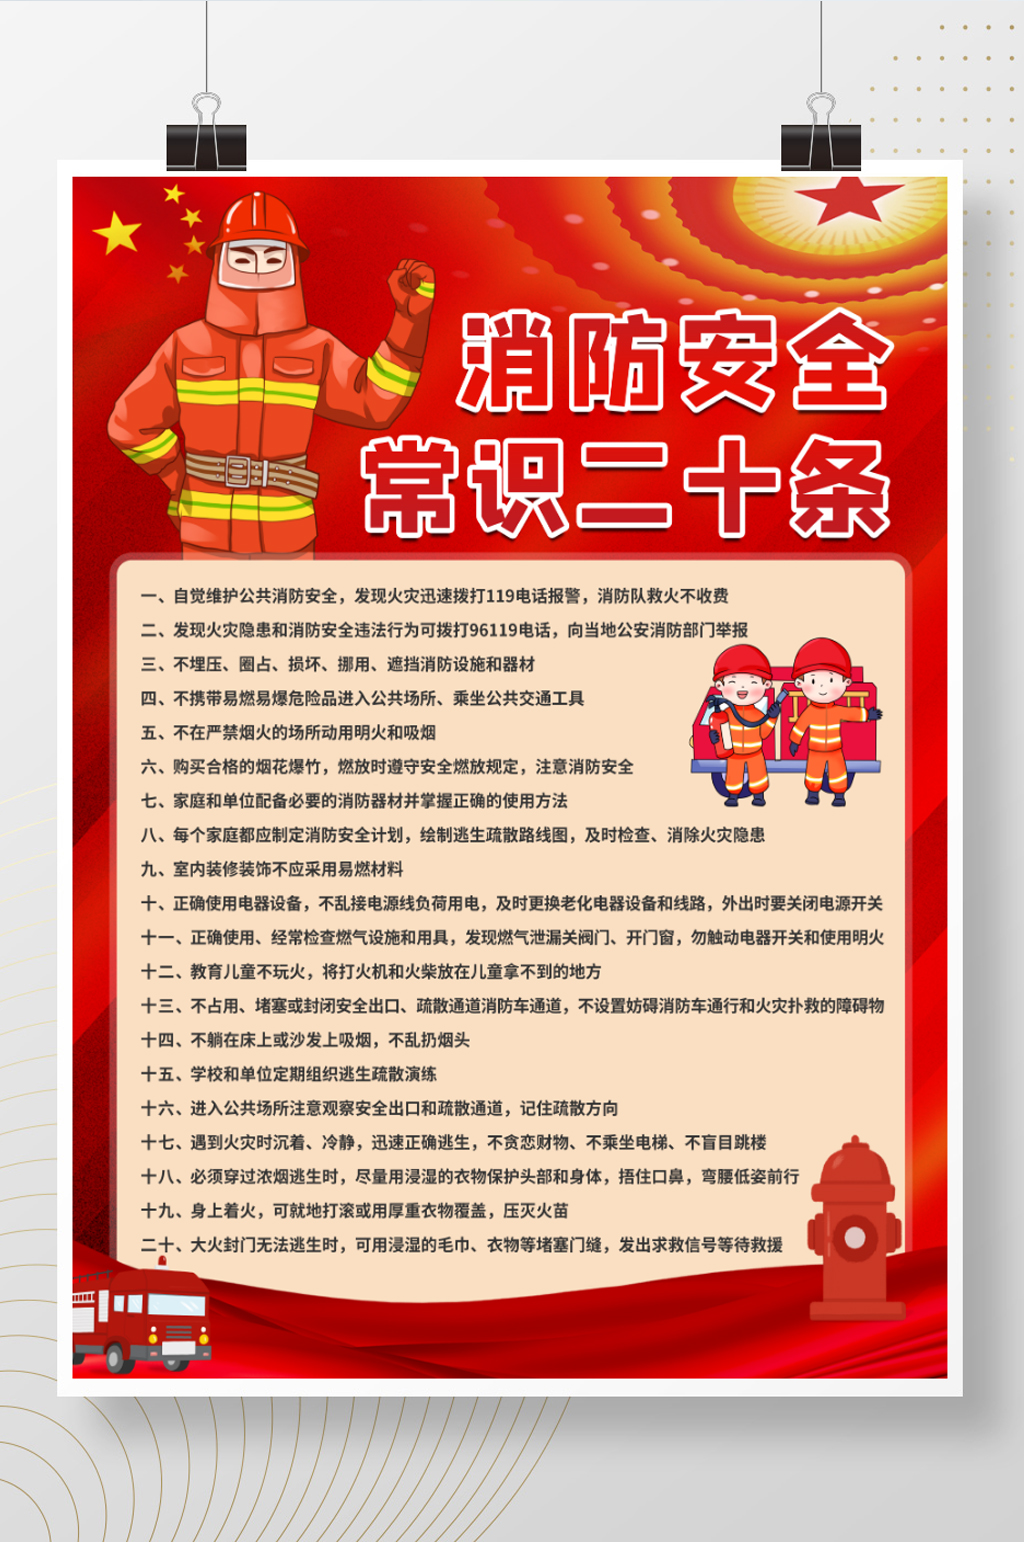 消防安全常识二十条宣传海报展板模板下载